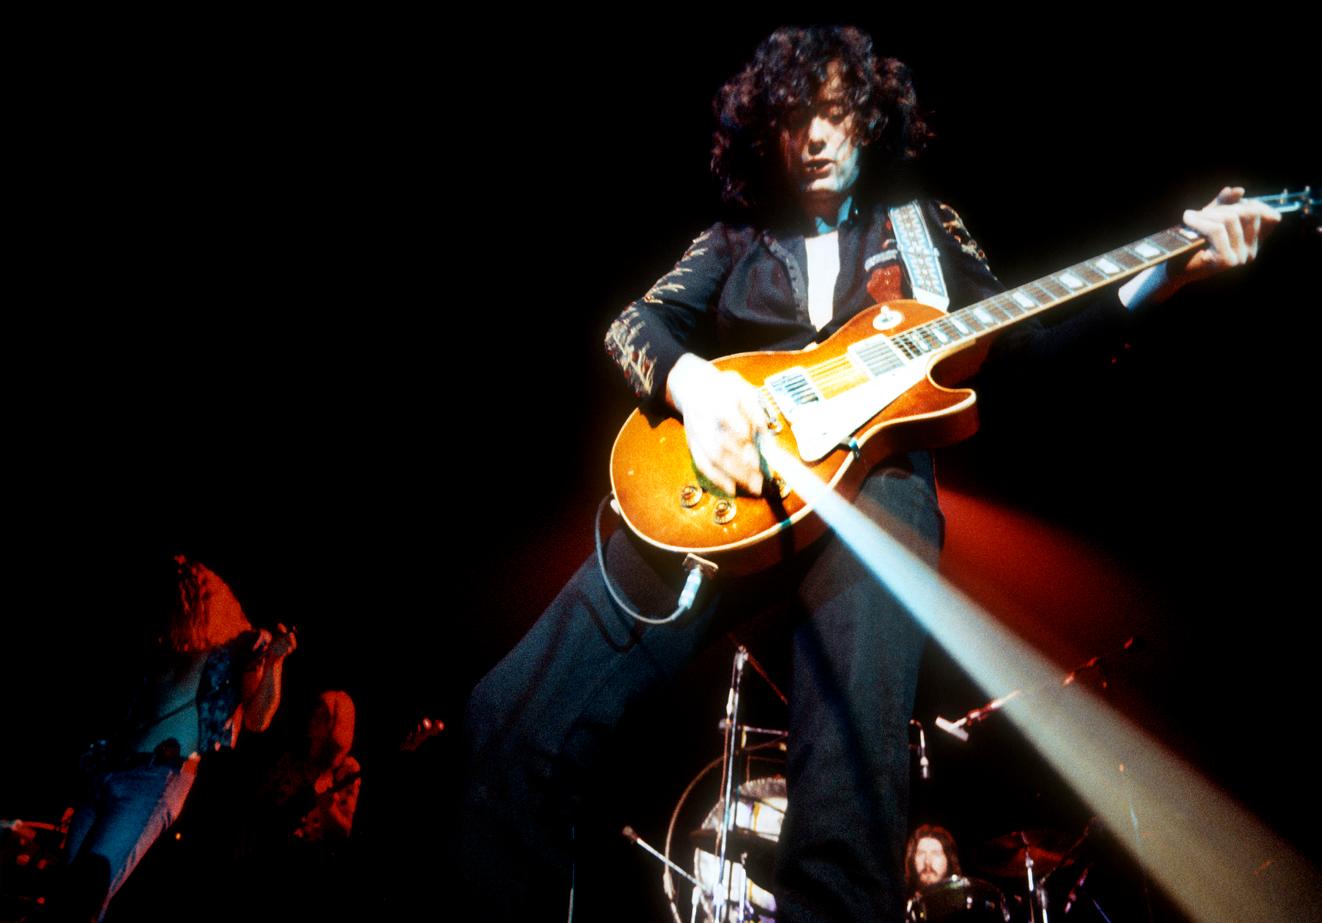 Aufgenommen im Forum in Inglewood, Kalifornien, 1972 während der Tournee zur Unterstützung des unbetitelten vierten Studioalbums von Led Zeppelin, das gemeinhin Led Zeppelin IV genannt wird. Dieses Bild wurde von Jimmy Page ausgewählt, um in seinem